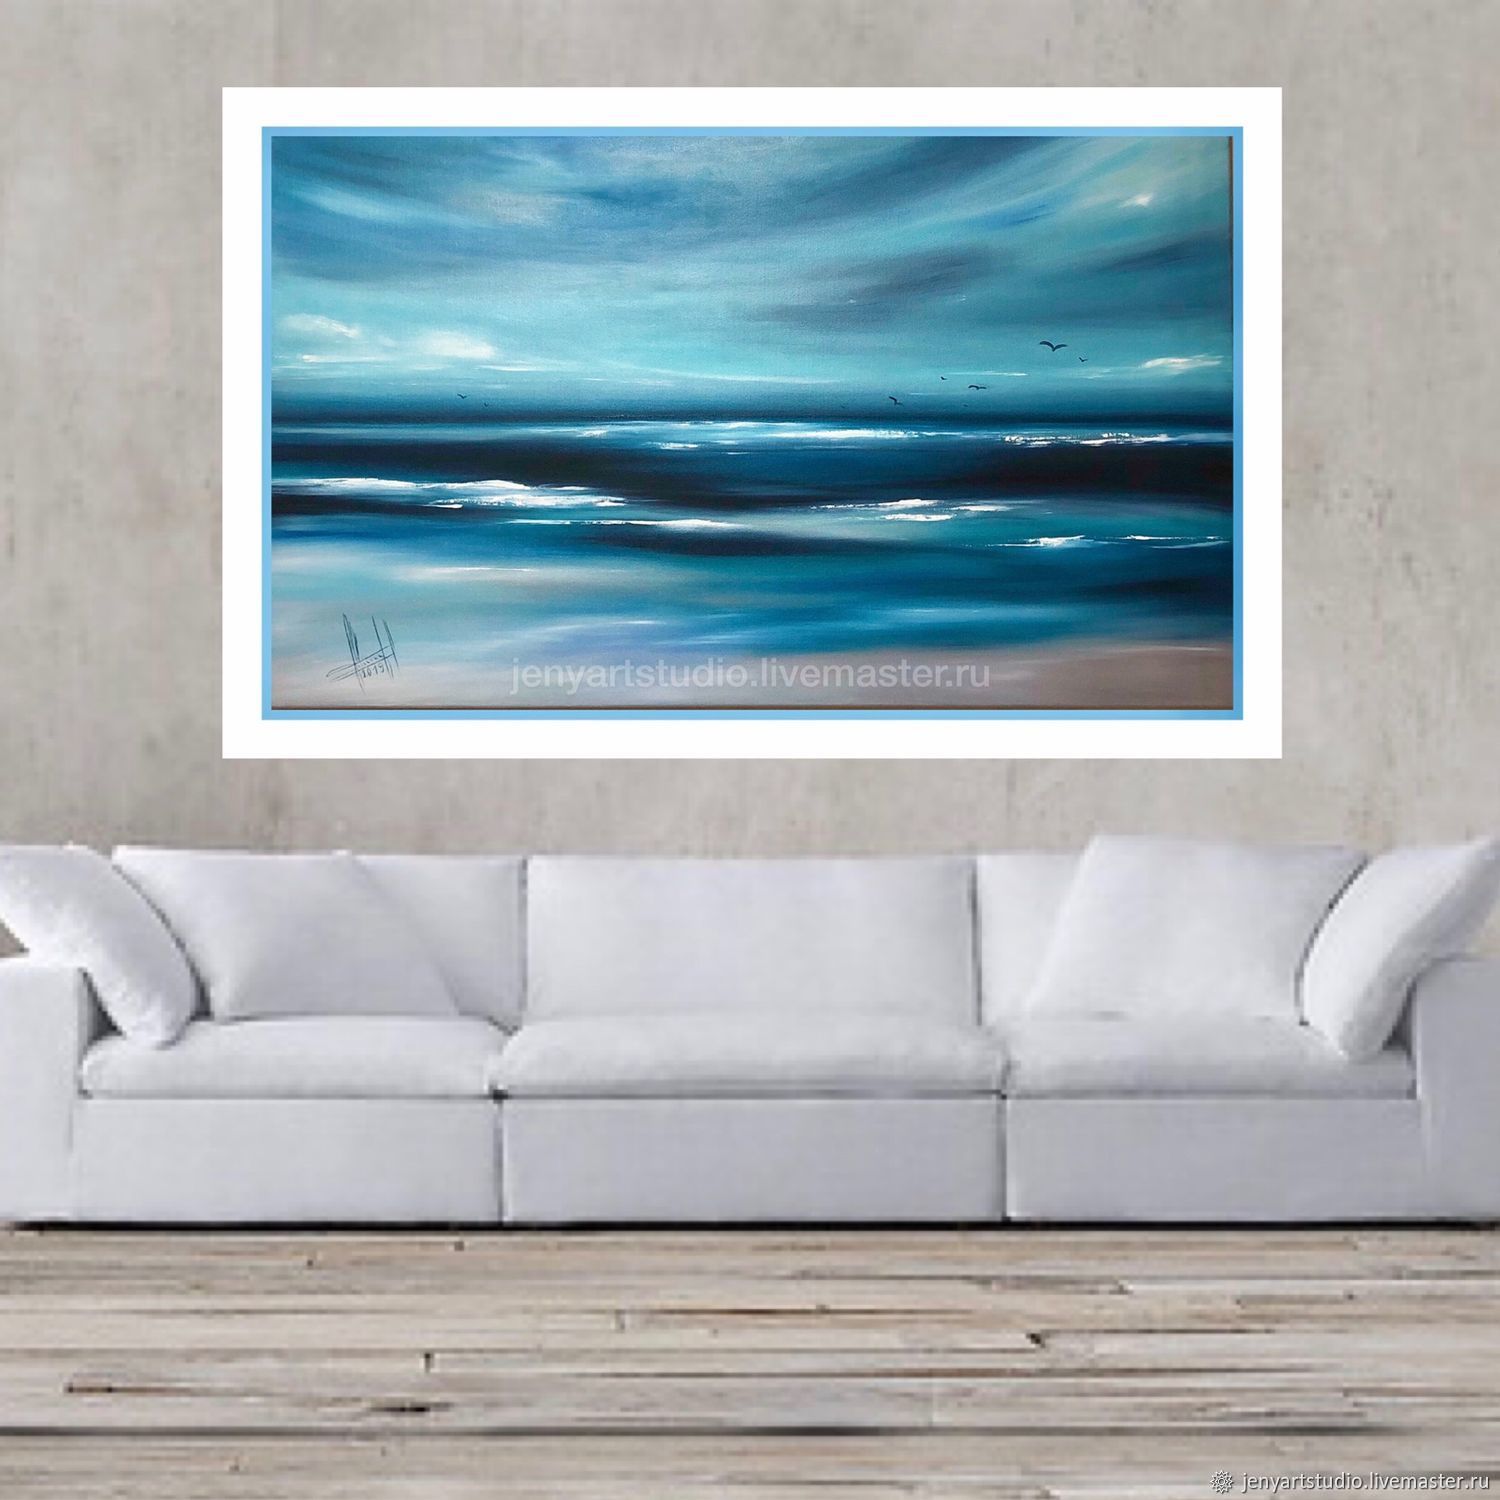 Большая картина маслом абстракция морской пейзаж синий голубой цвет, Картины, Коломна,  Фото №1